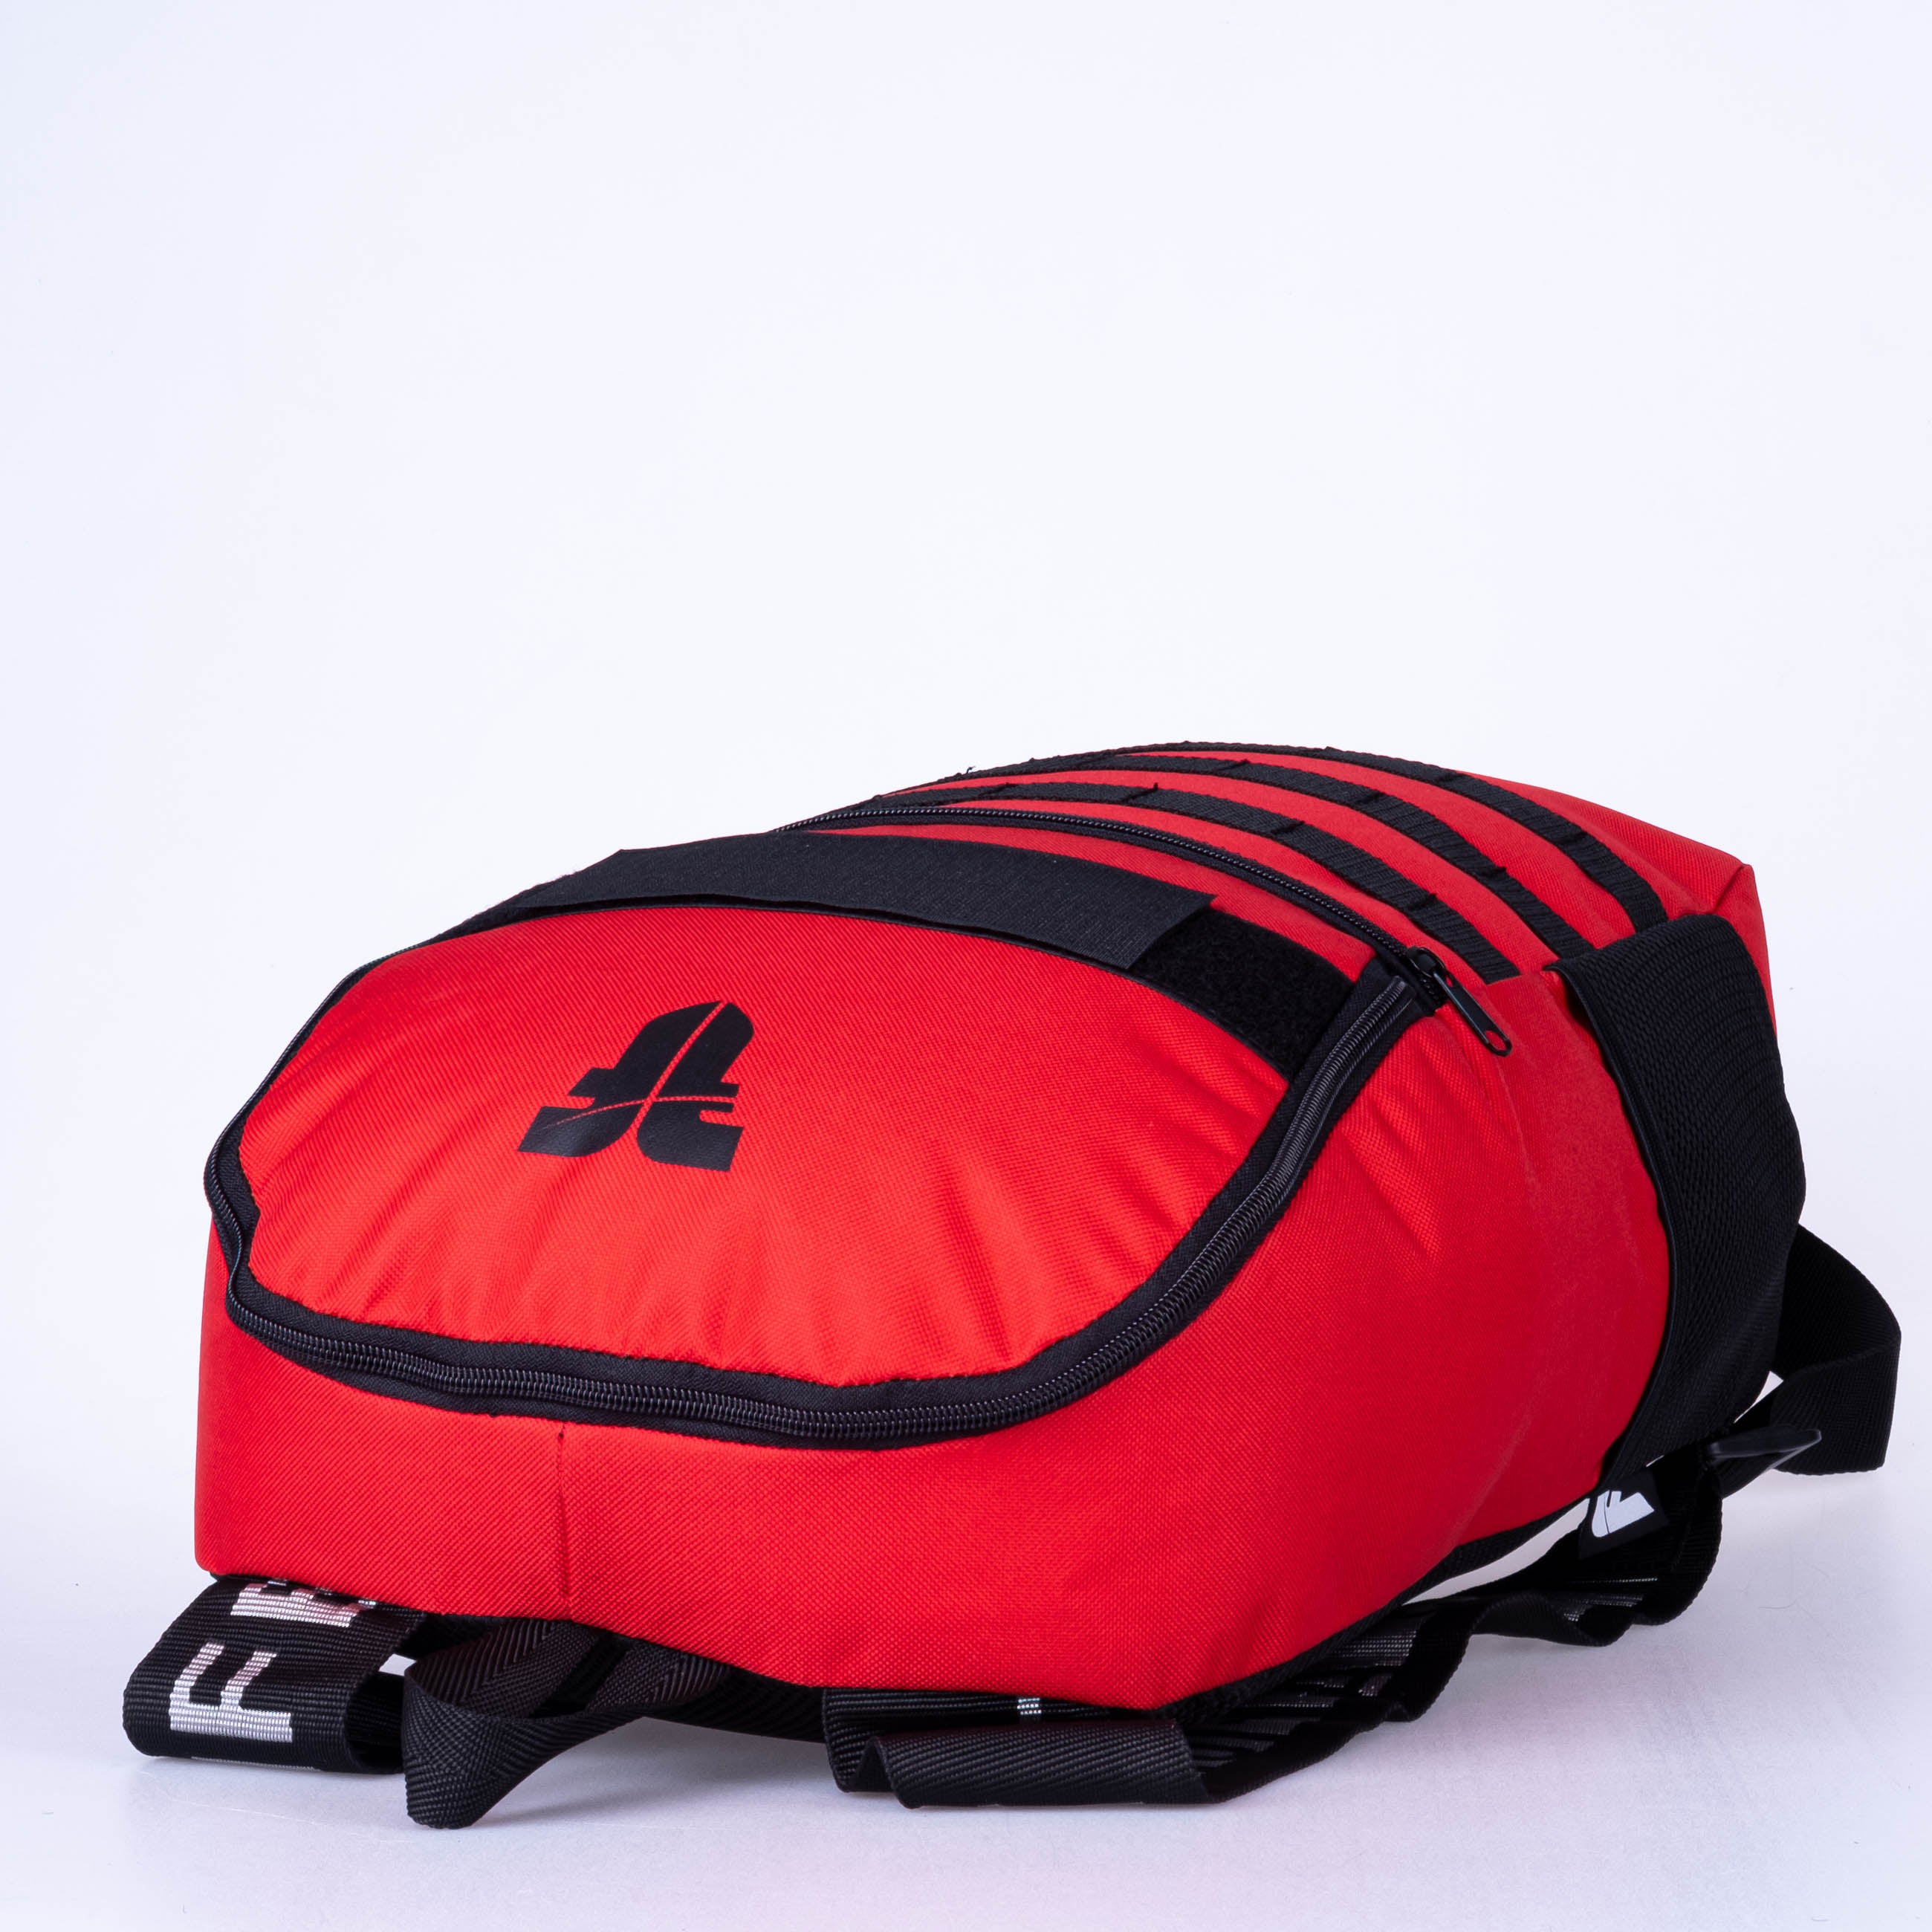 Fighter Backpack Sport Line - Red